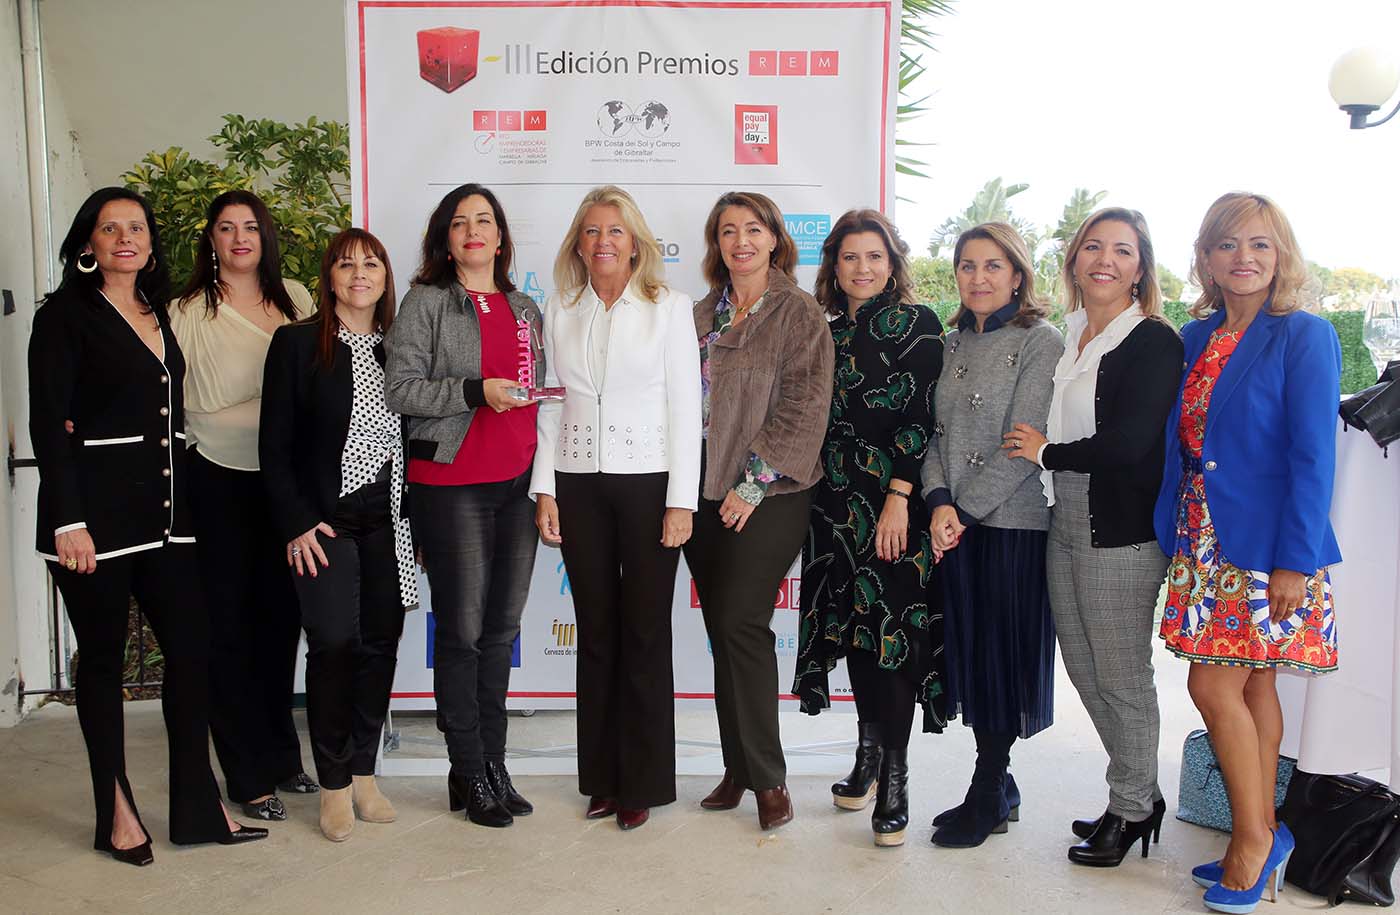 La alcaldesa acompaña a la Red de Emprendedoras de Marbella (REM) en su almuerzo con motivo del Día Internacional de las Mujeres